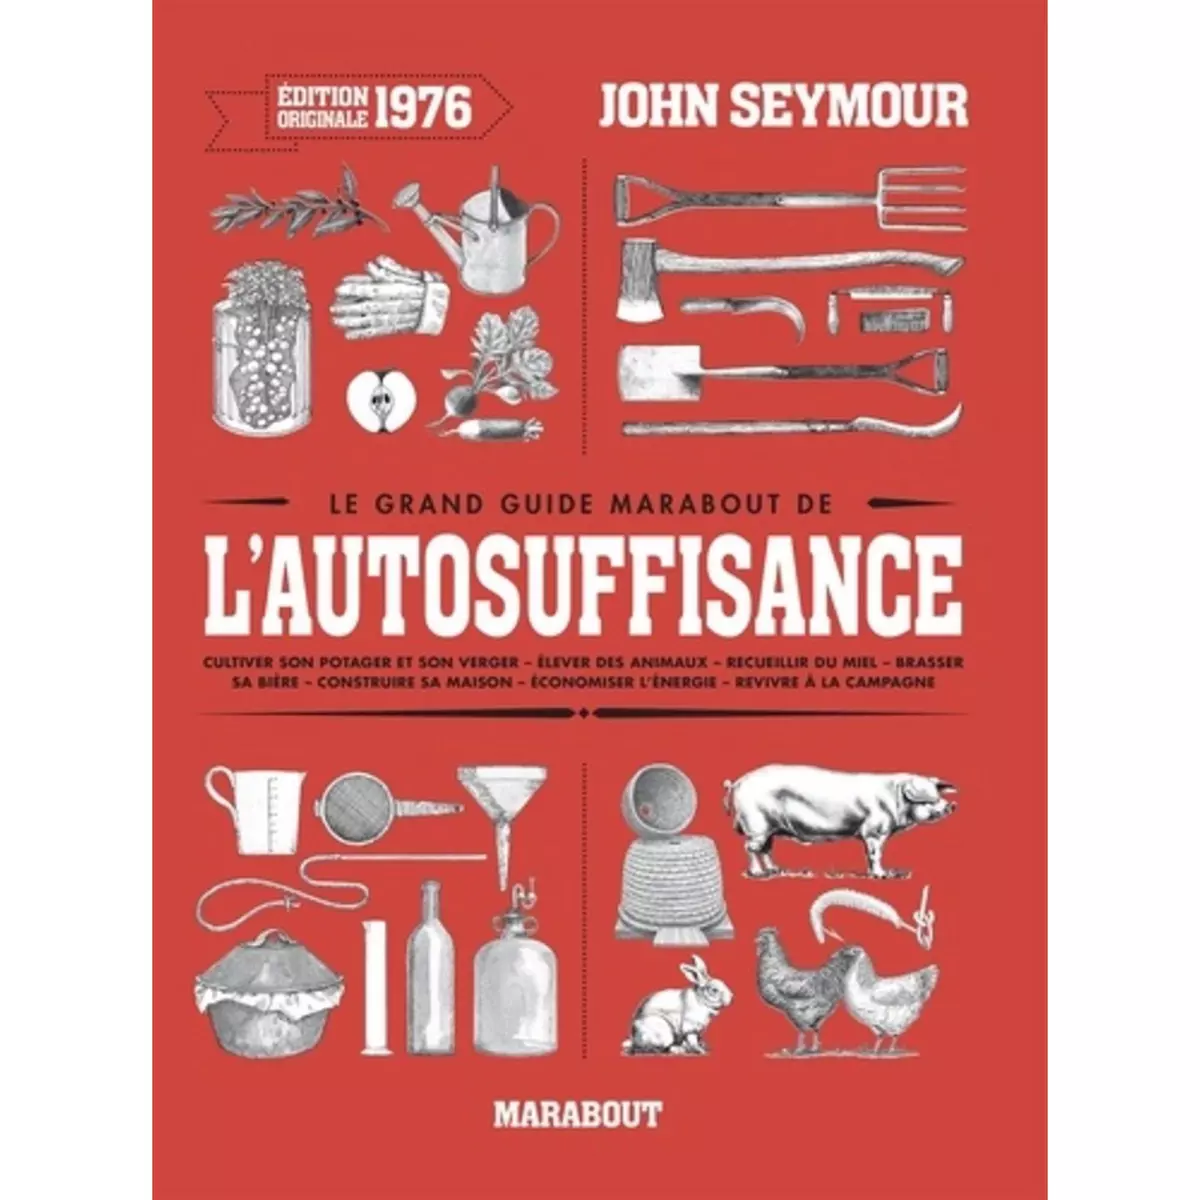  LE GRAND GUIDE MARABOUT DE L'AUTO-SUFFISANCE, Seymour John